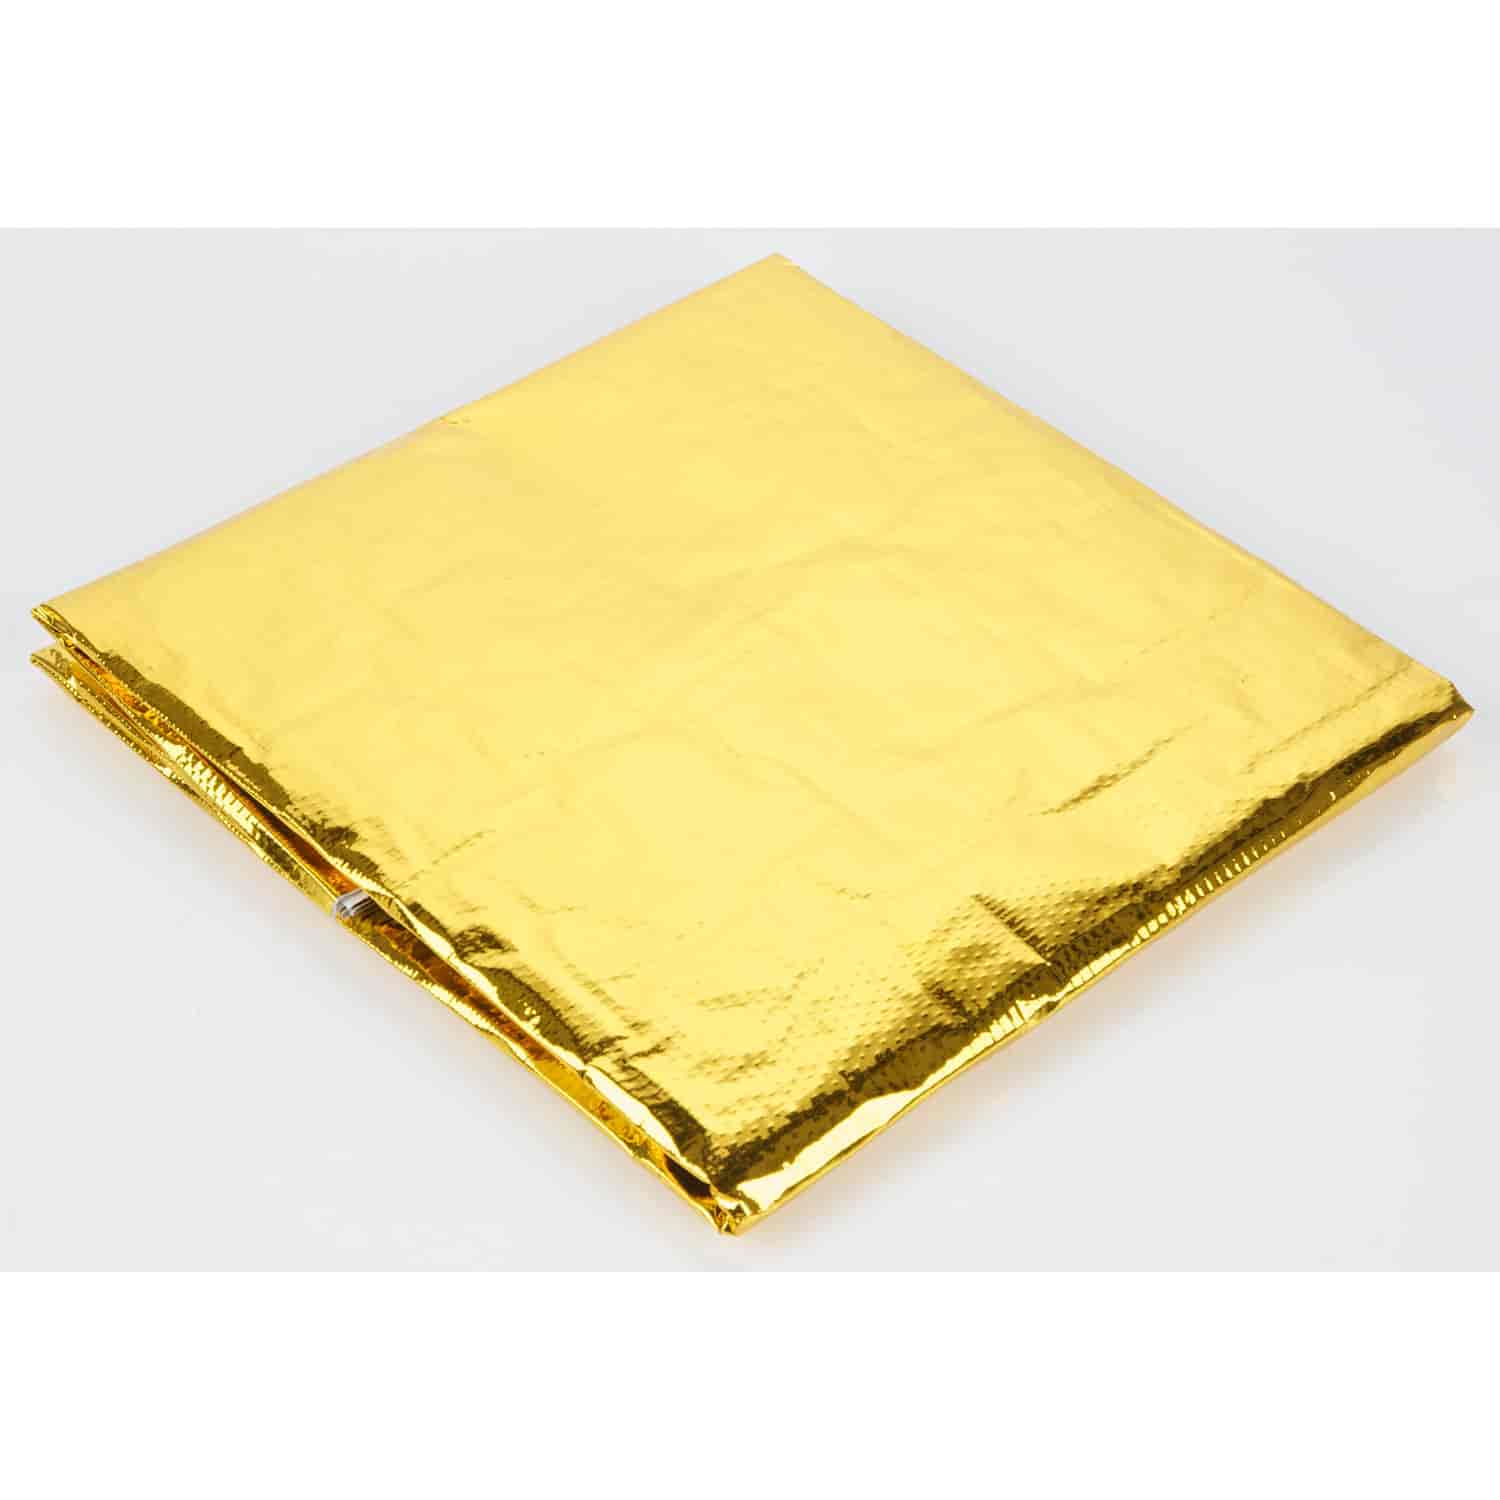 Reflective Gold Heat Shield 24" x 24" Sheet